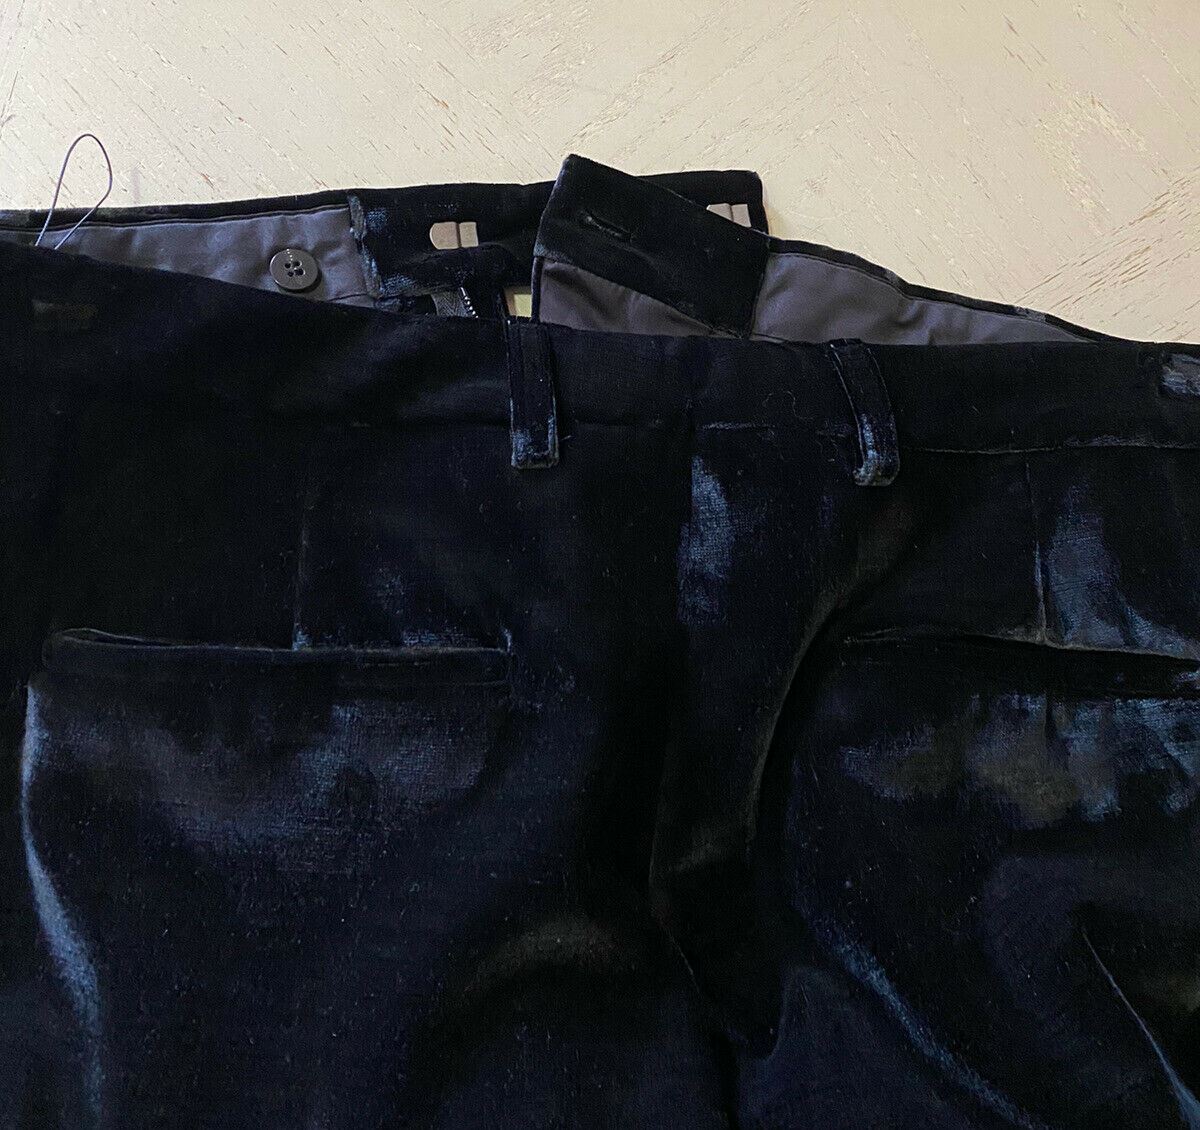 NWT $1290 Saint Laurent Men’s Dress Pants Black 34 US ( 50 Eu ) Italy